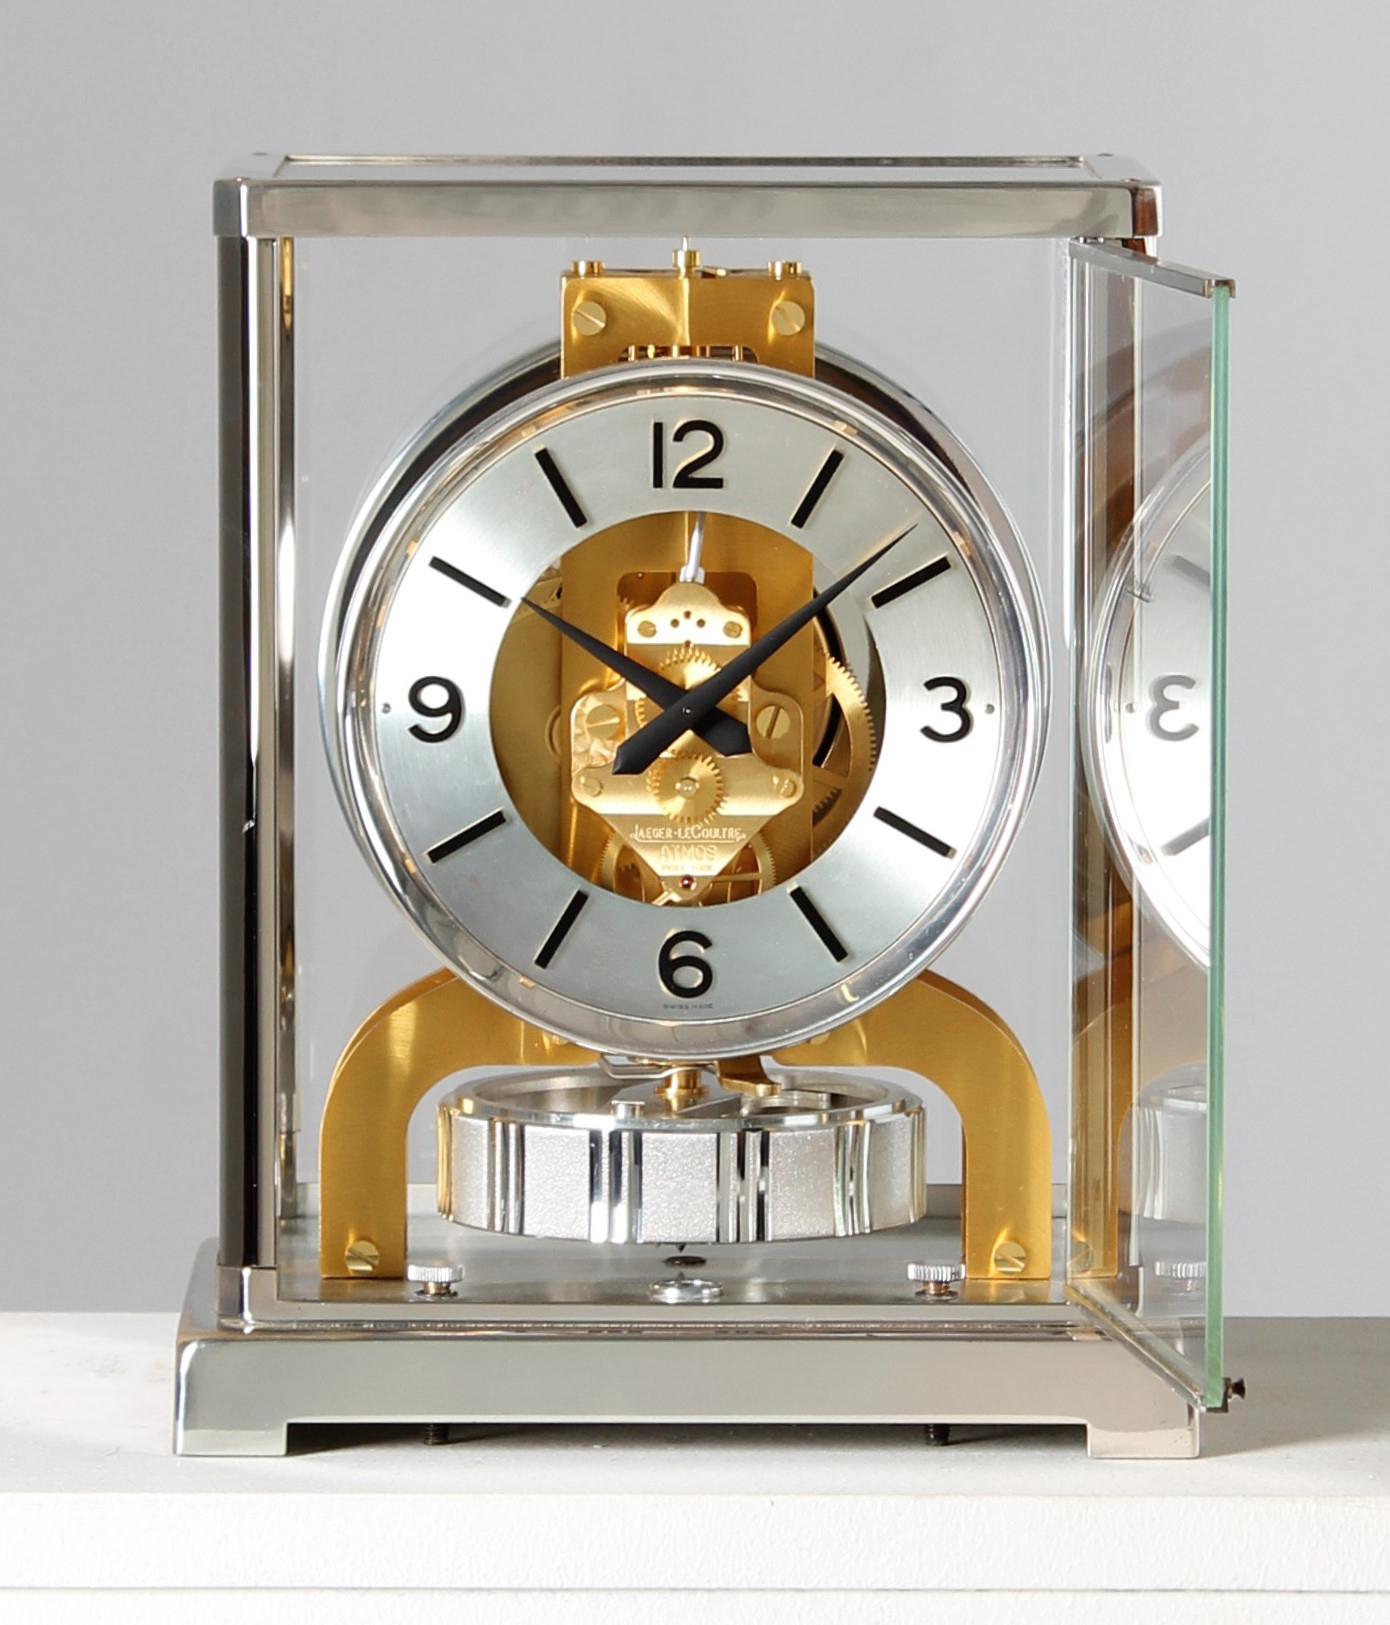 Jaeger-LeCoultre - Horloge Atmos en version bicolore argent-or

Suisse
Laiton nickelé et doré
Année de fabrication 1978

Dimensions : H x L x P : 22 x 18 x 13 cm : H x L x P : 22 x 18 x 13,5 cm

Description :
Le calibre Atmos V 526 a été proposé